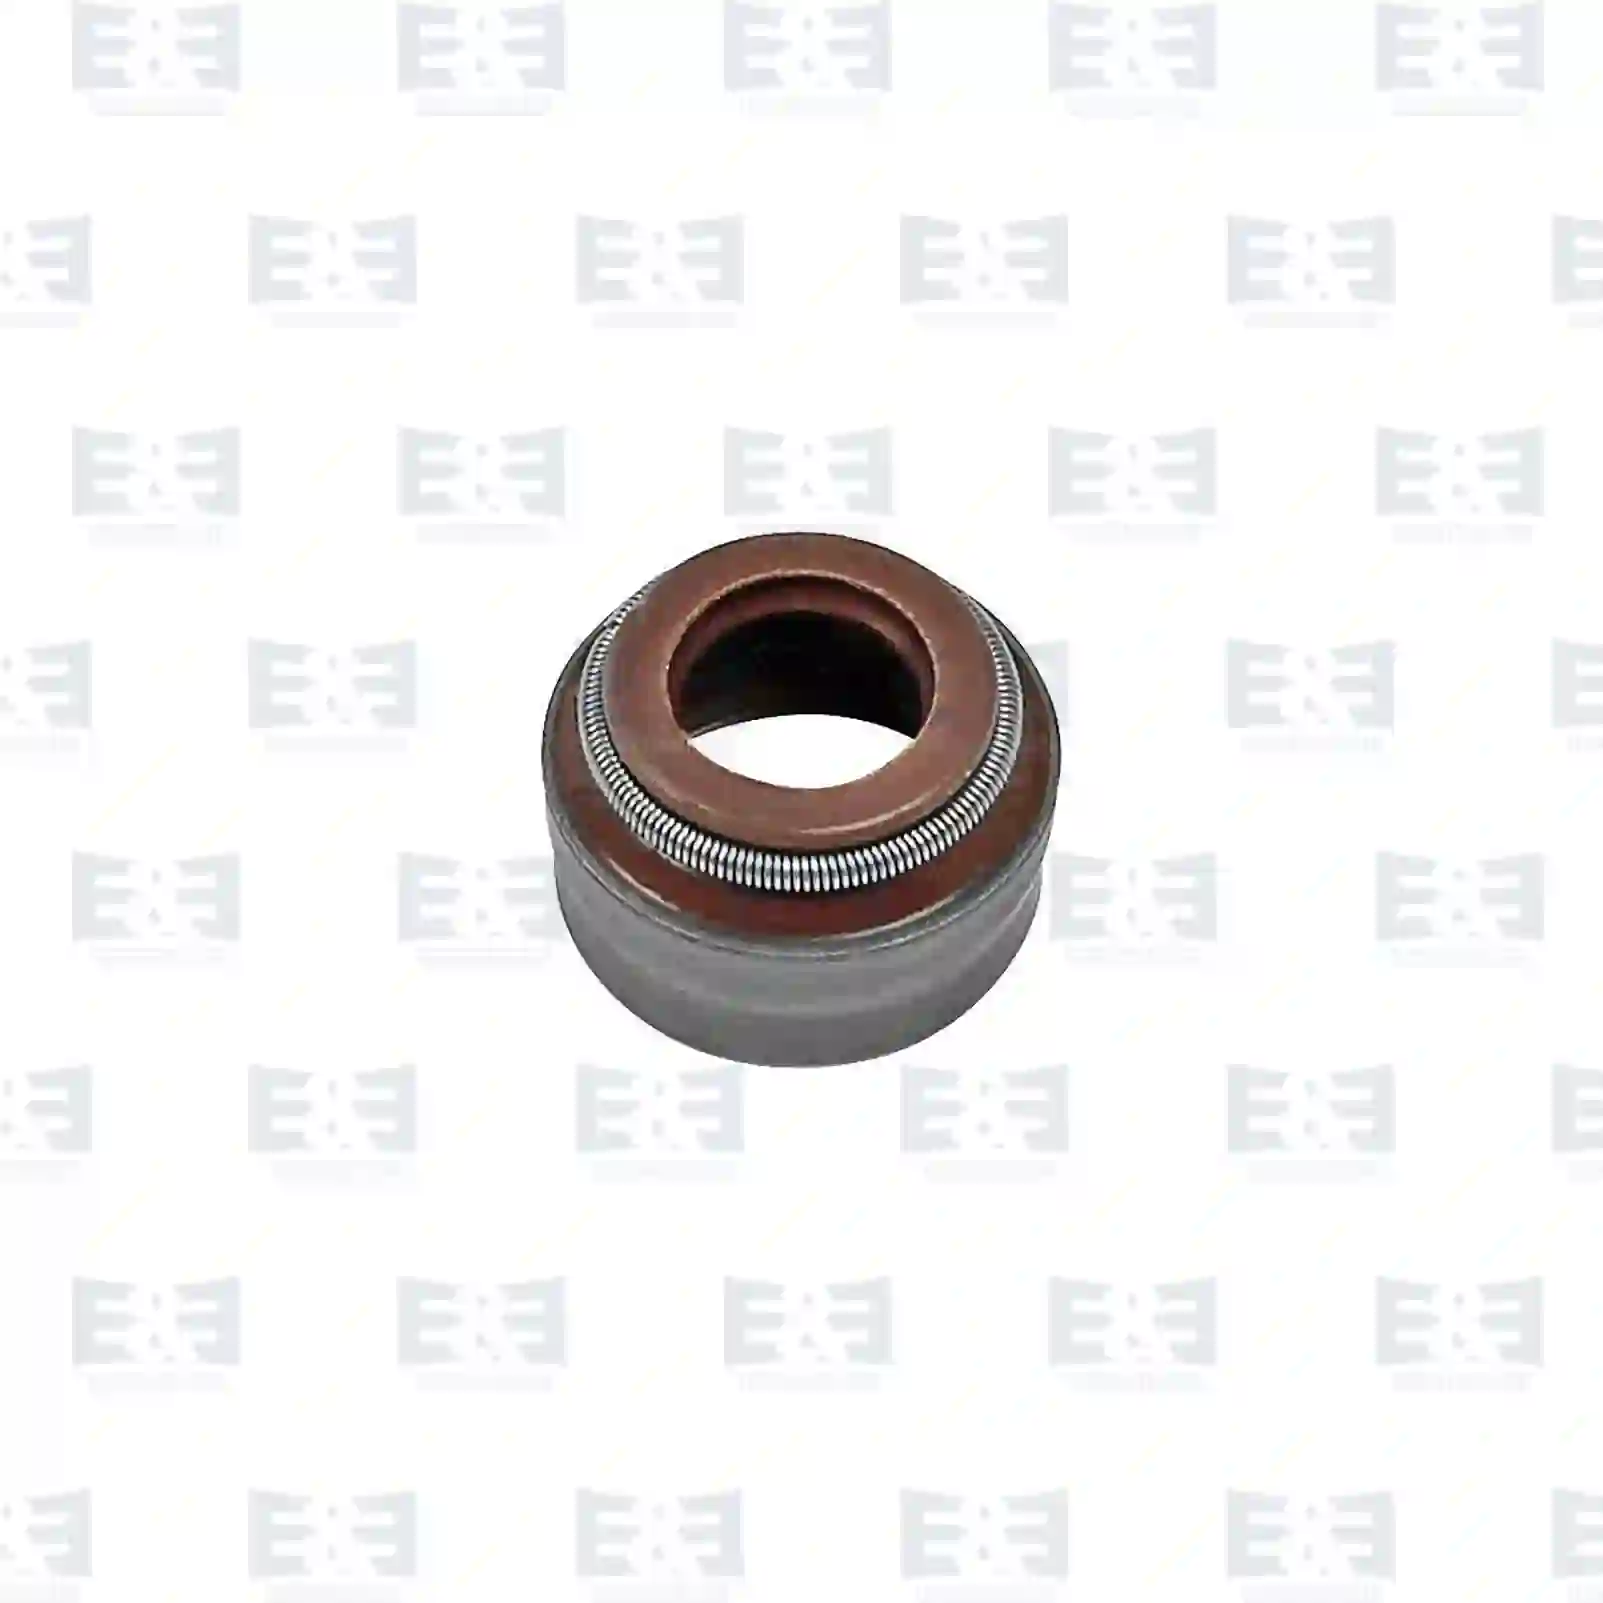  Valve stem seal || E&E Truck Spare Parts | Truck Spare Parts, Auotomotive Spare Parts